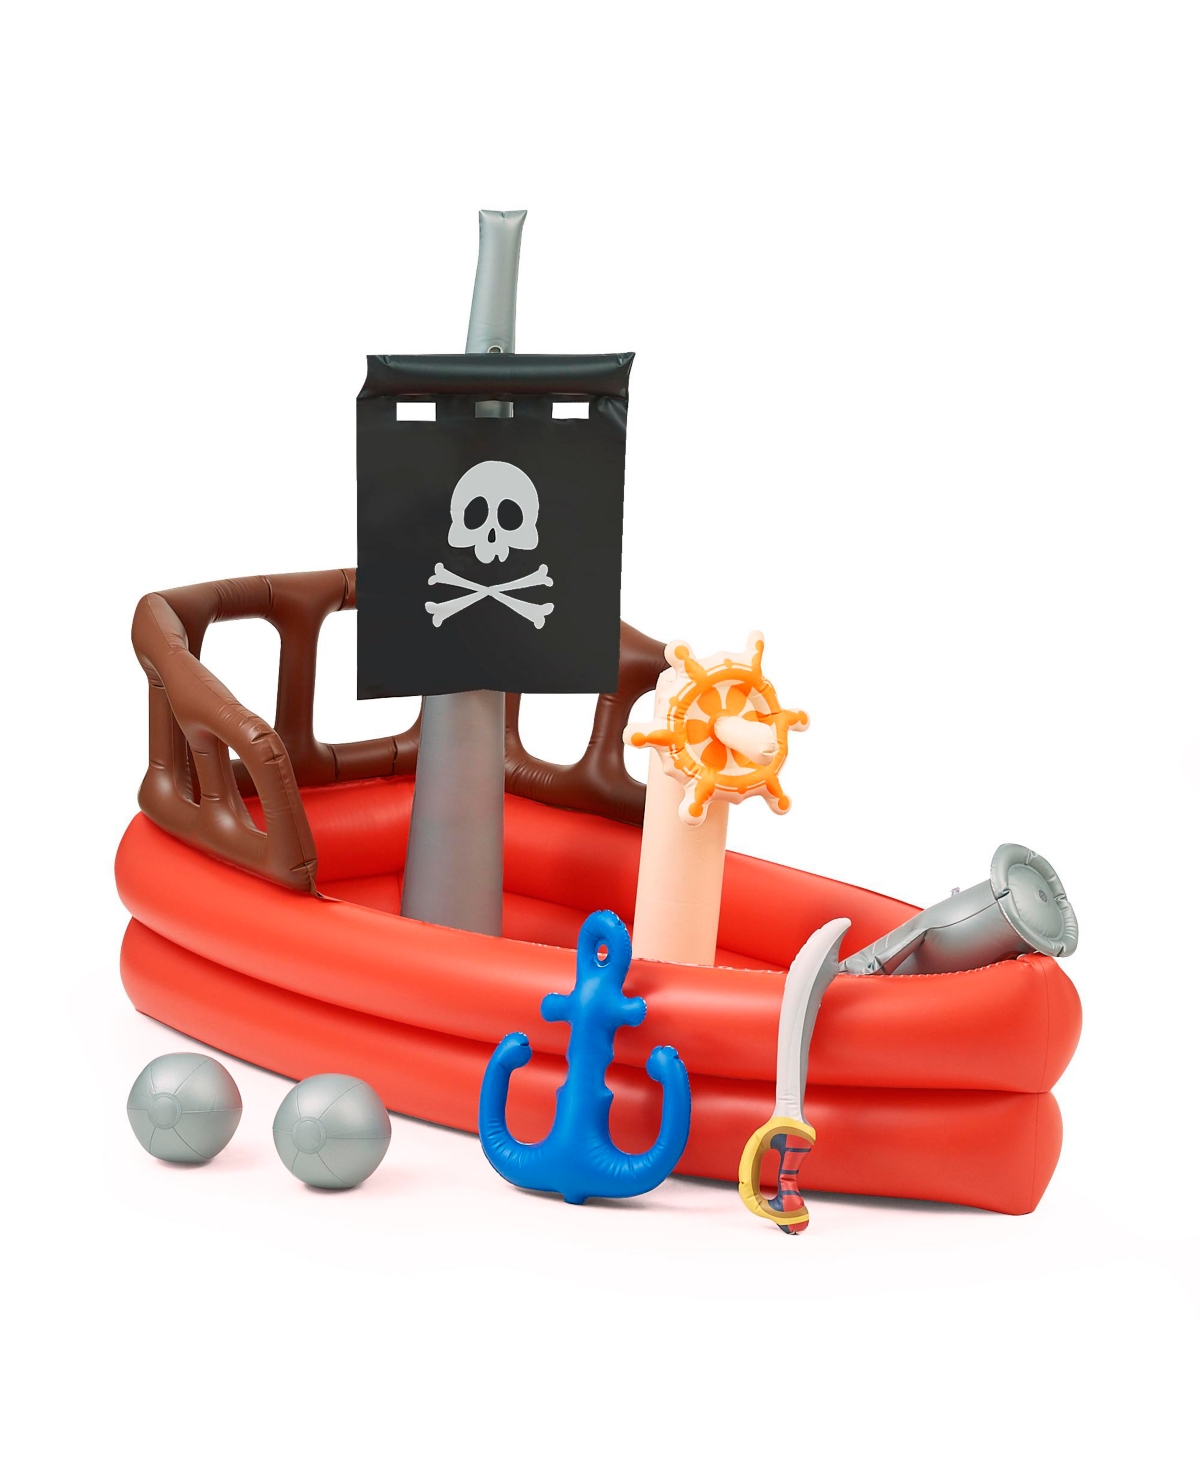 Teamson - Water Fun Pirate Boat Inflatable Kiddie Pool With Pump In Black